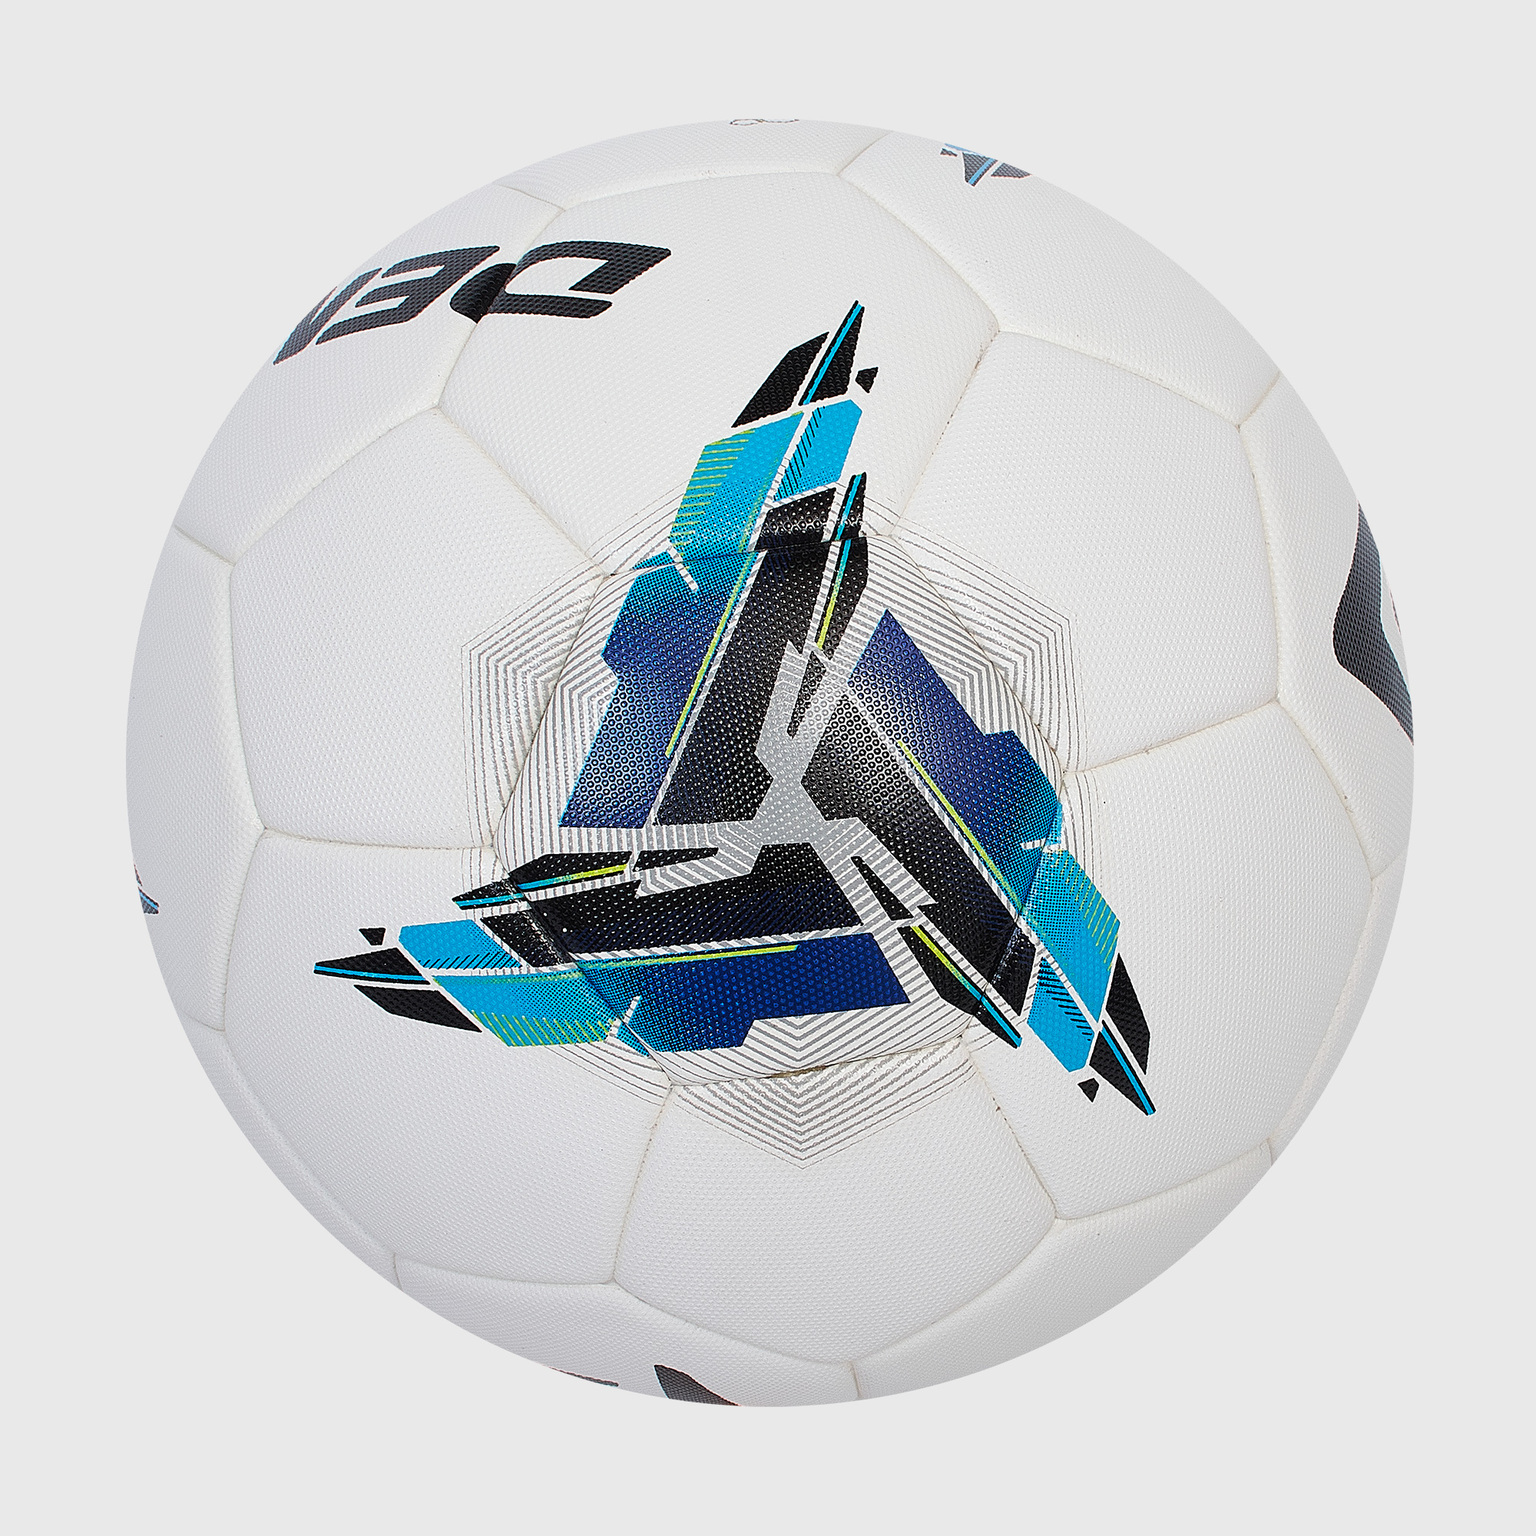 Футбольный мяч Demix Thermo Fifa Quality Pro 114509-00